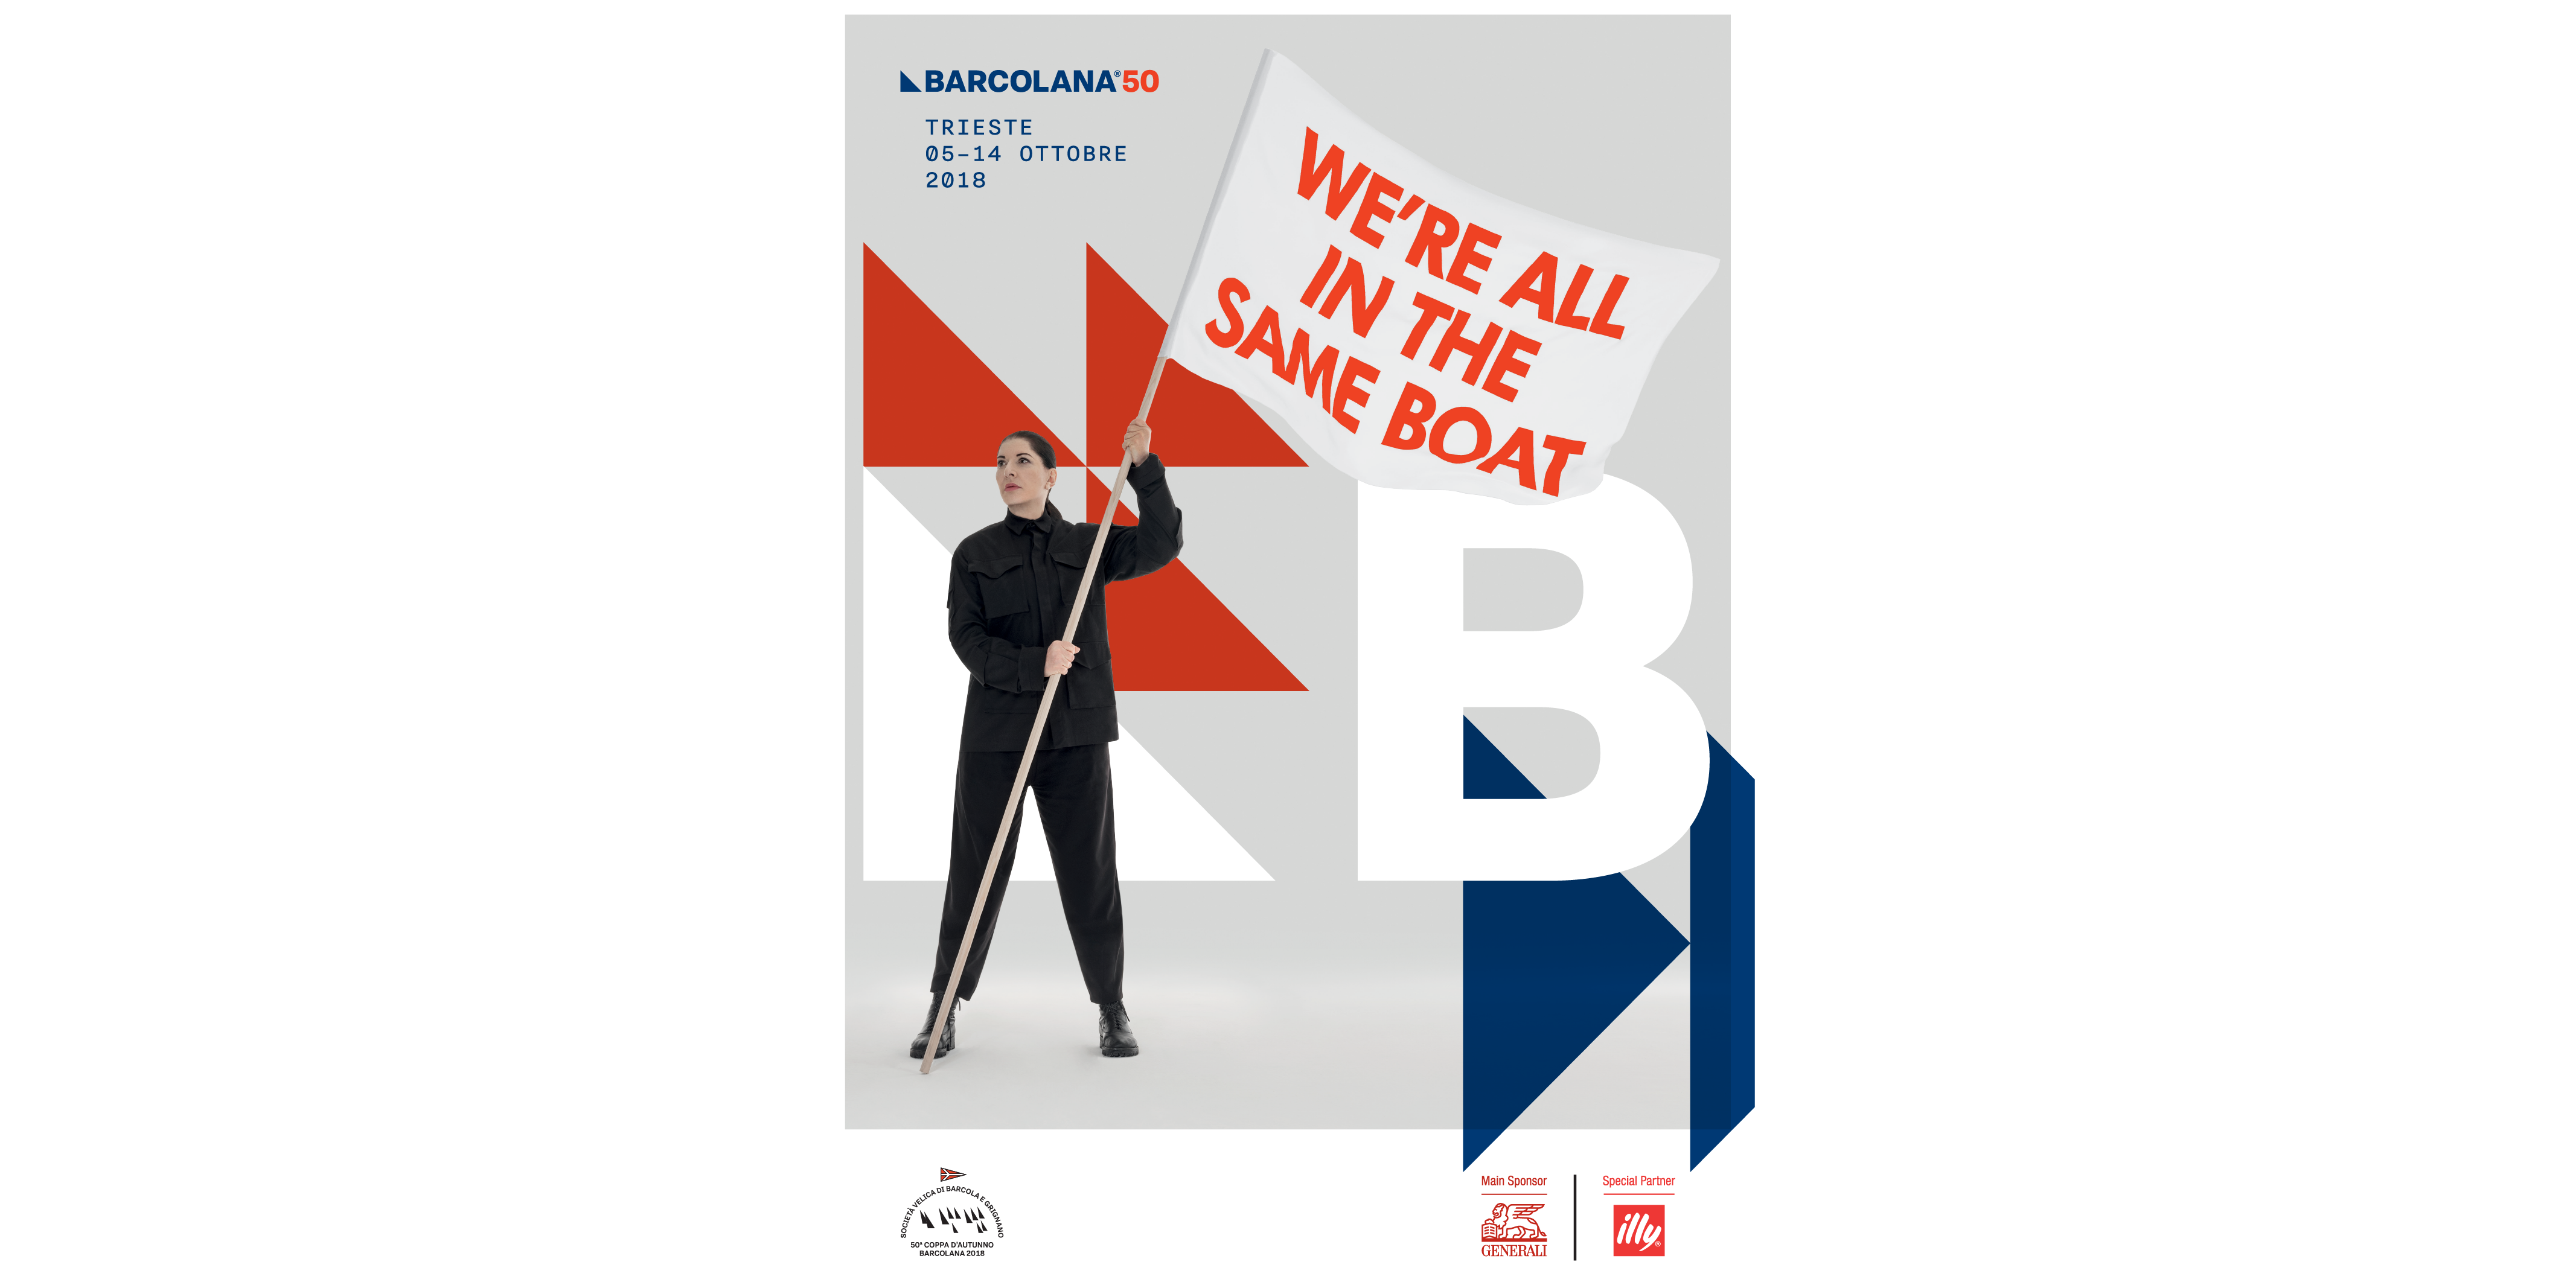 Barcolana 50: “Siamo tutti sulla stessa barca”, presentato il manifesto